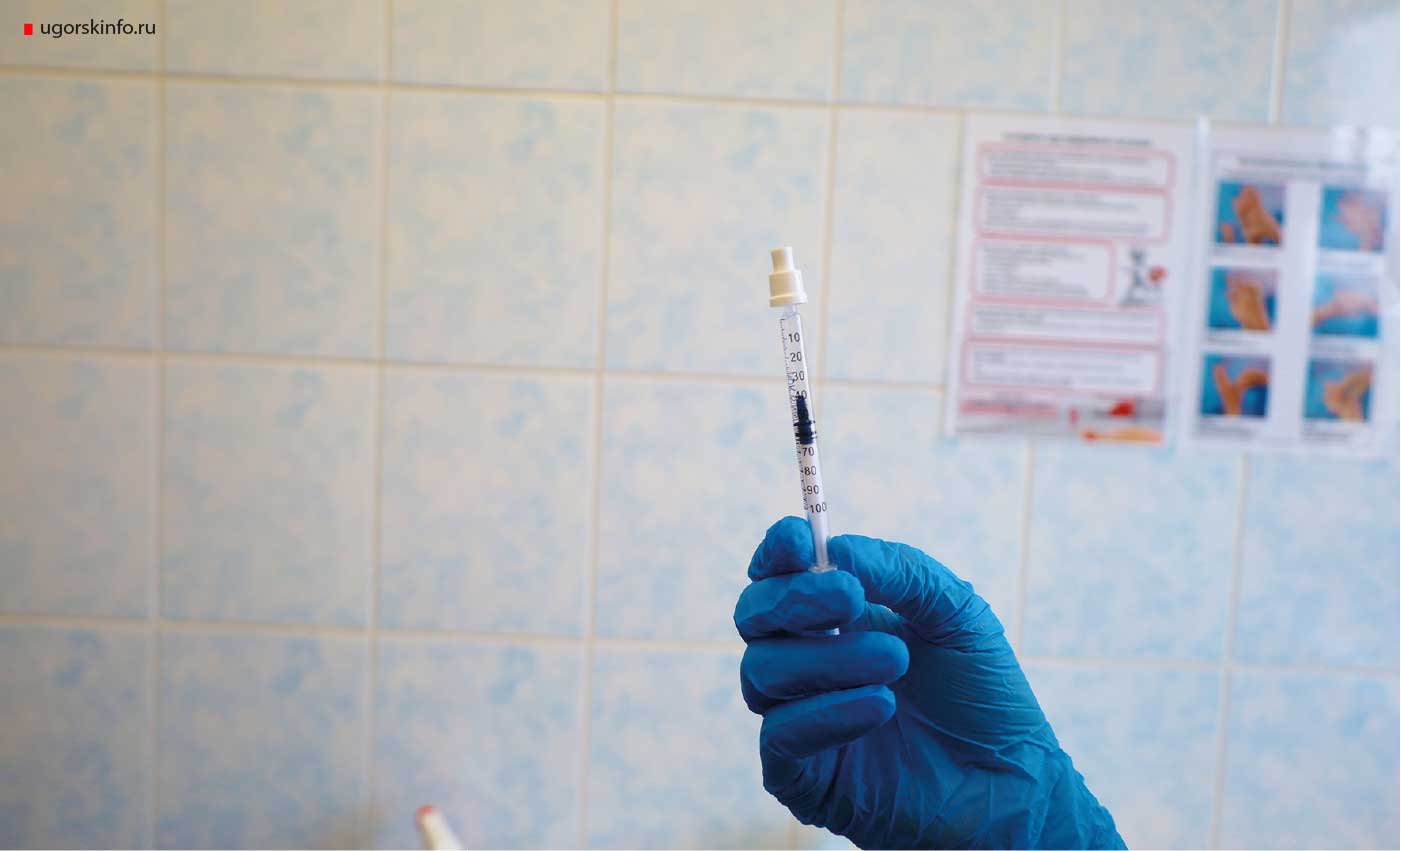 12 октября в городскую больницу поступила партия специальных насадок на шприцы, позволяющих вводить вакцину против коронавирусной инфекции интраназальным методом. 